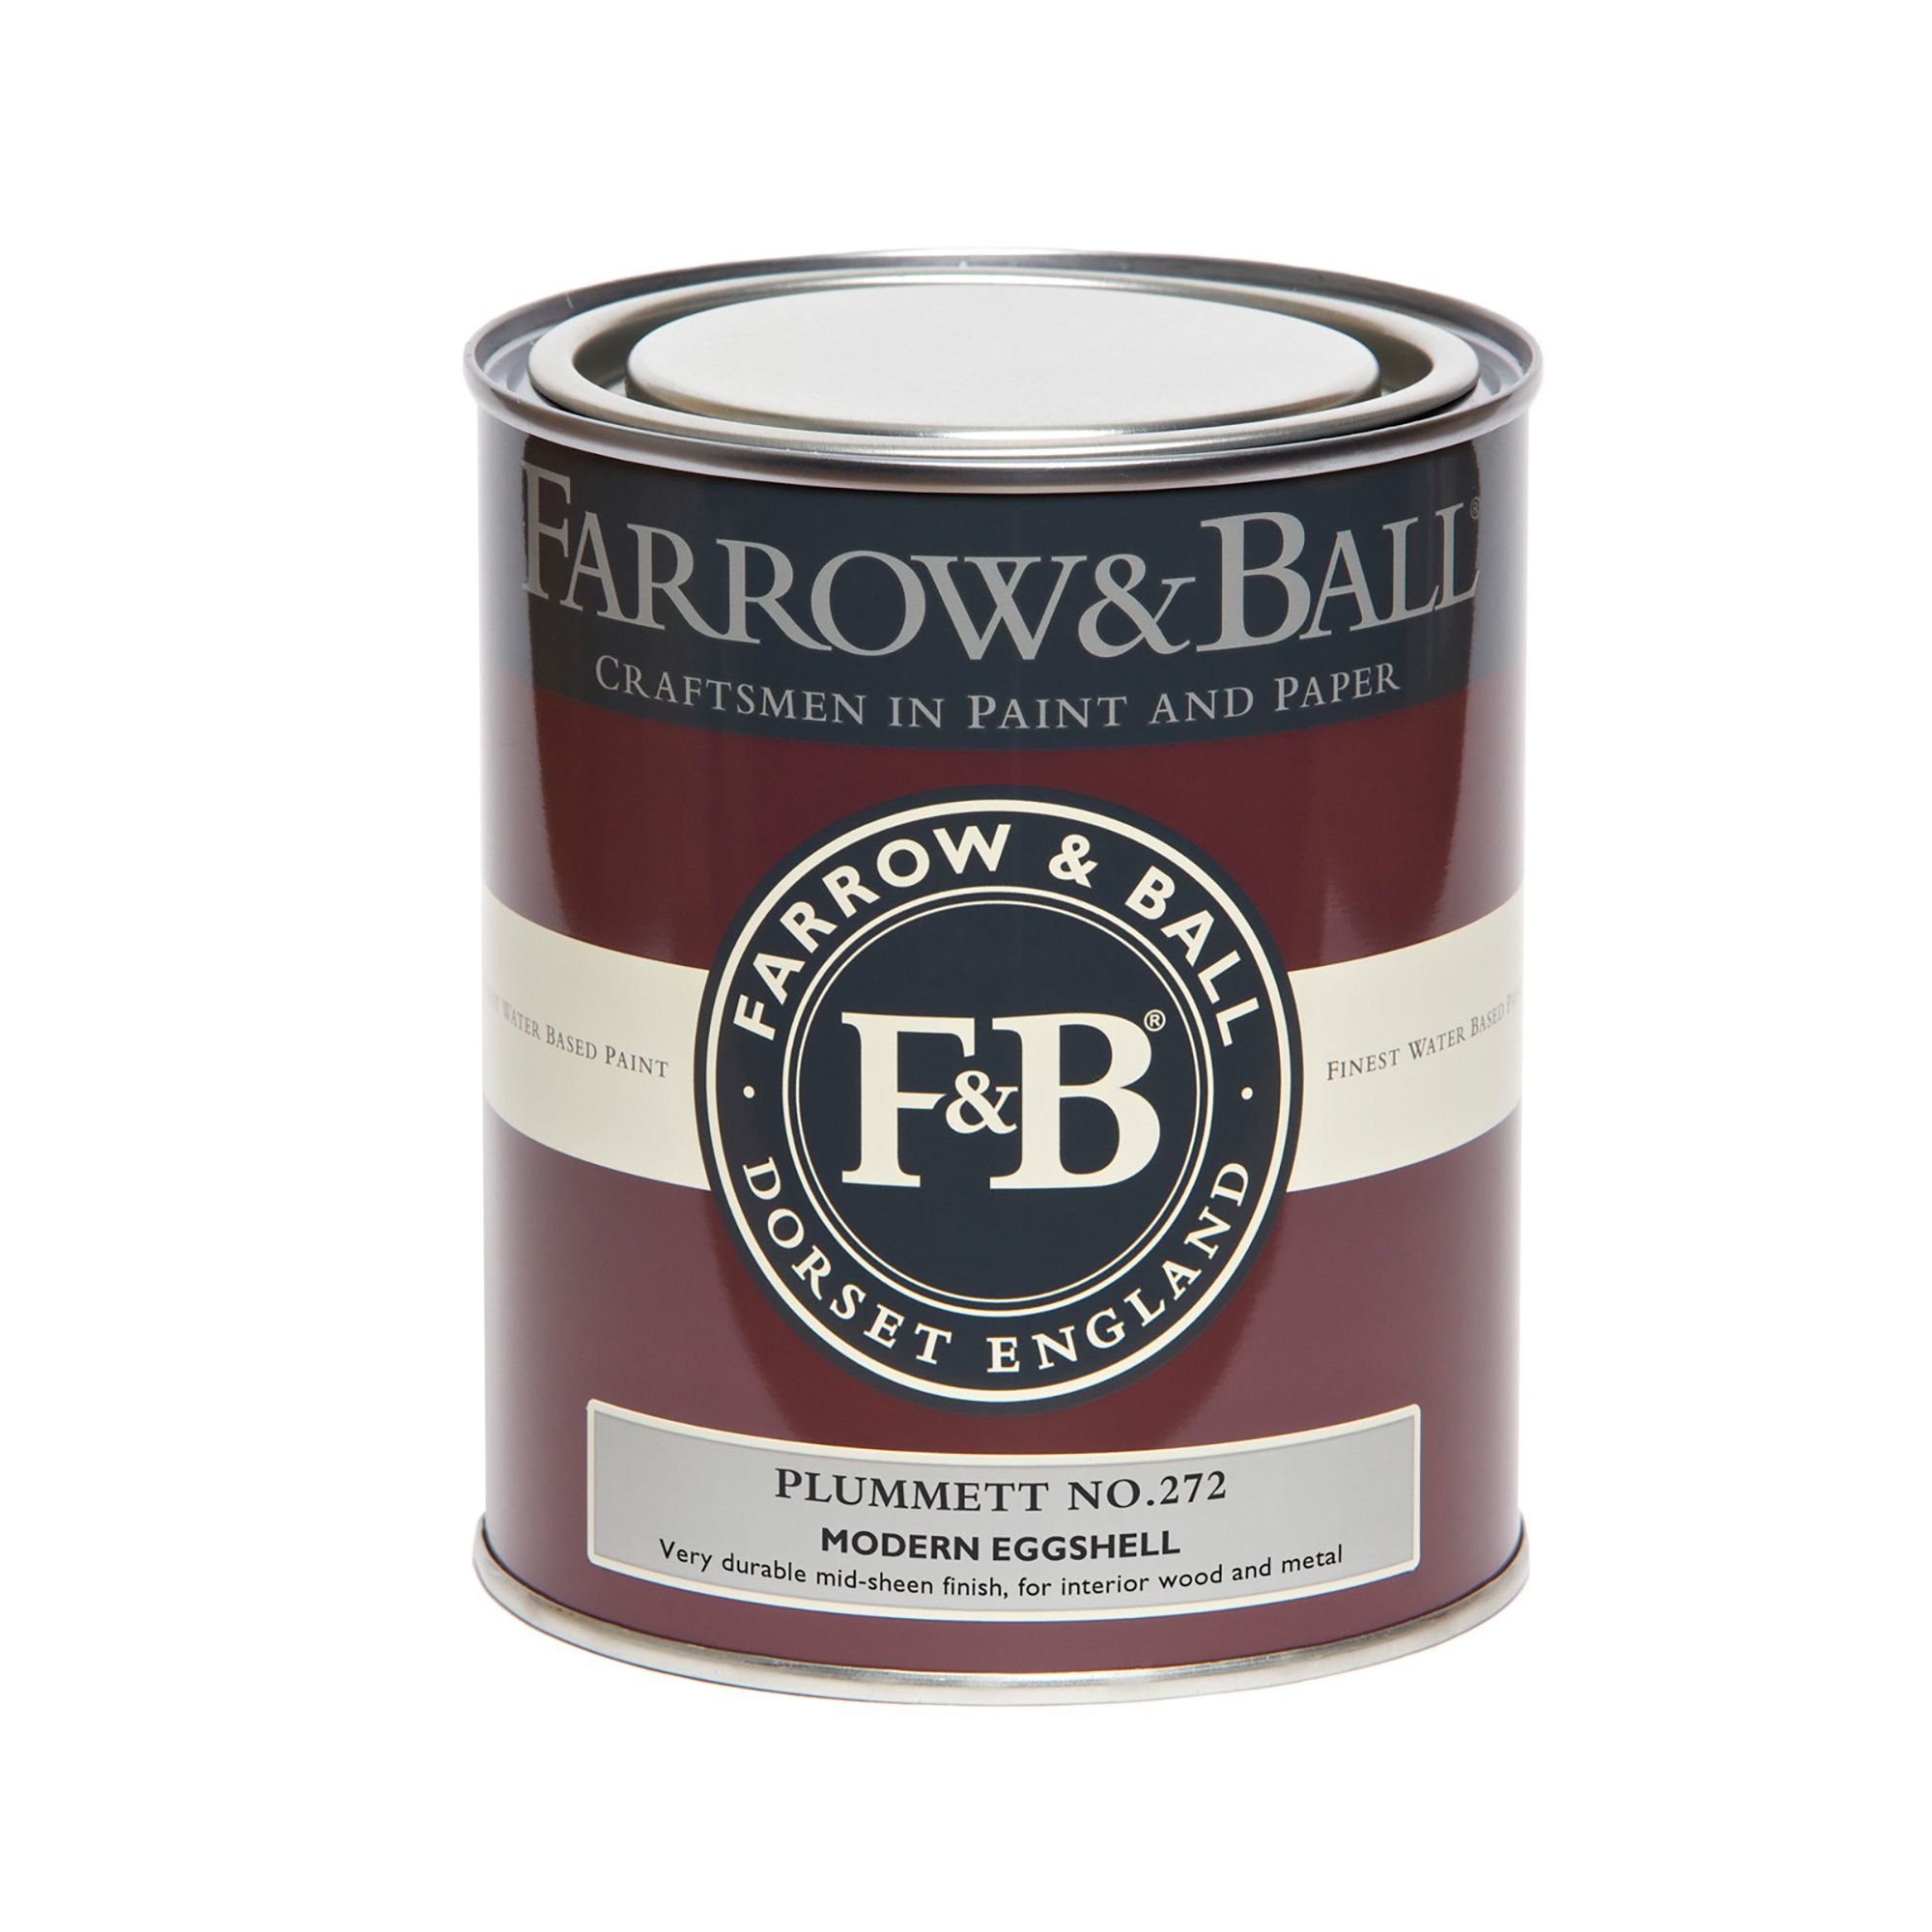 Farrow & Ball Modern Plummett No.272 Eggshell Paint, 750ml